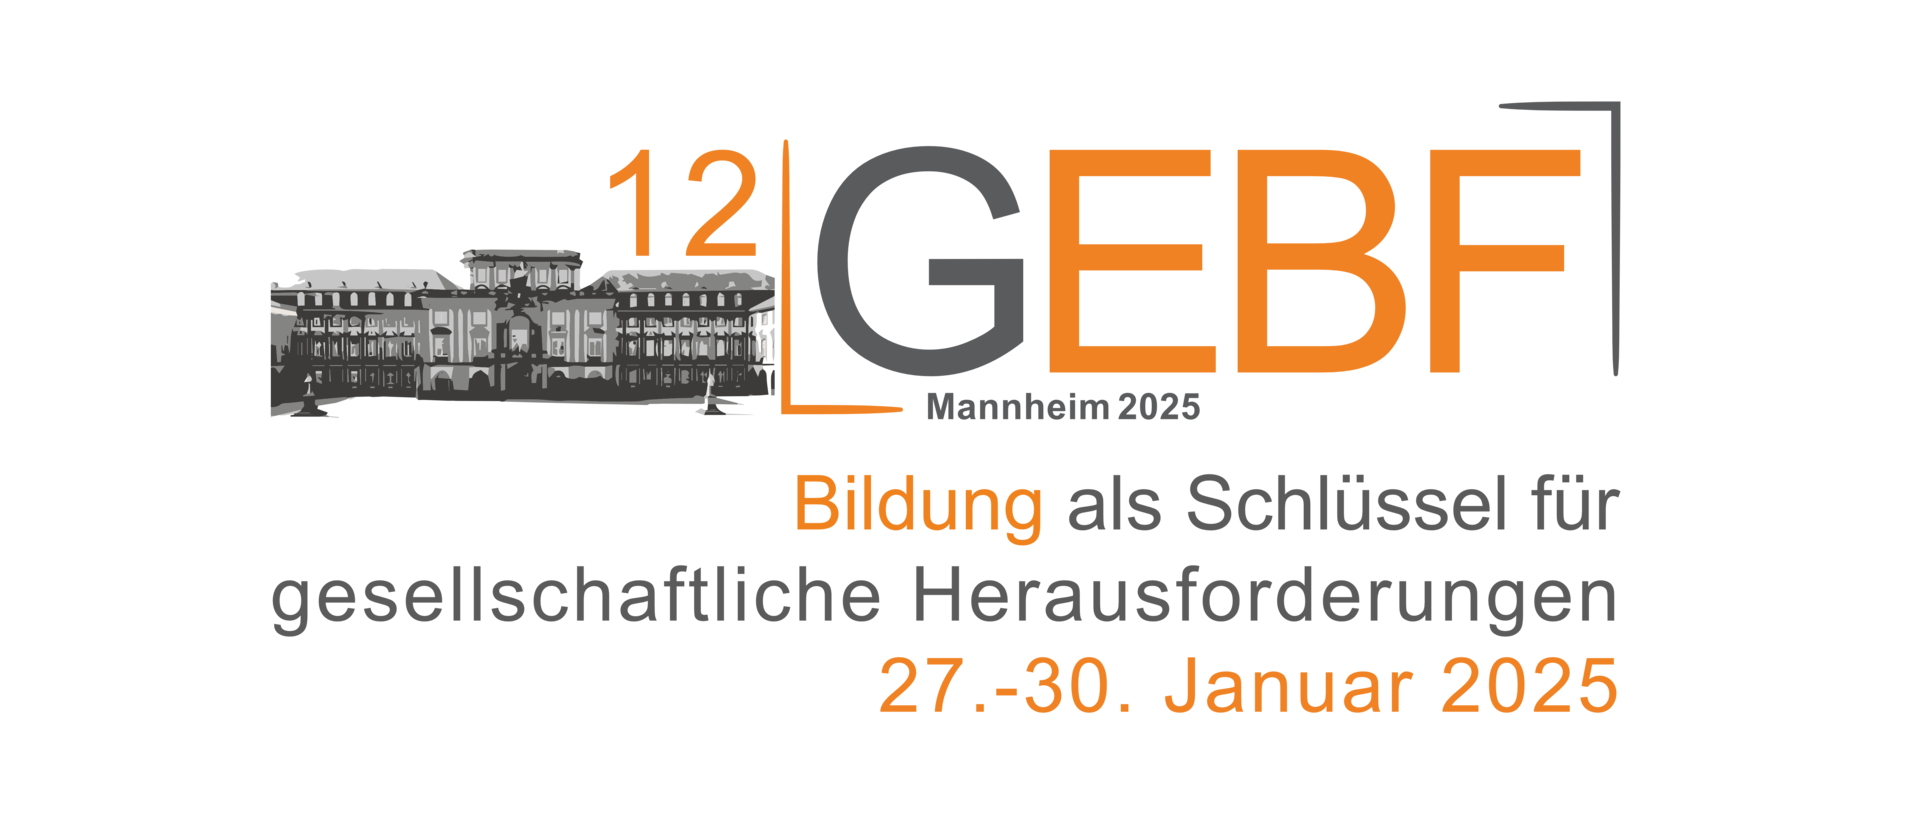 Das Logo der 12. GEBF 2025, das das Schloss Mannheim enthält. Der Slogan lautet "Bildung als Schlüssen für gesellschaftliche Herausforderungen". Der Zeitraum der Tagung ist vom 27. zum 30. Januar 2025.